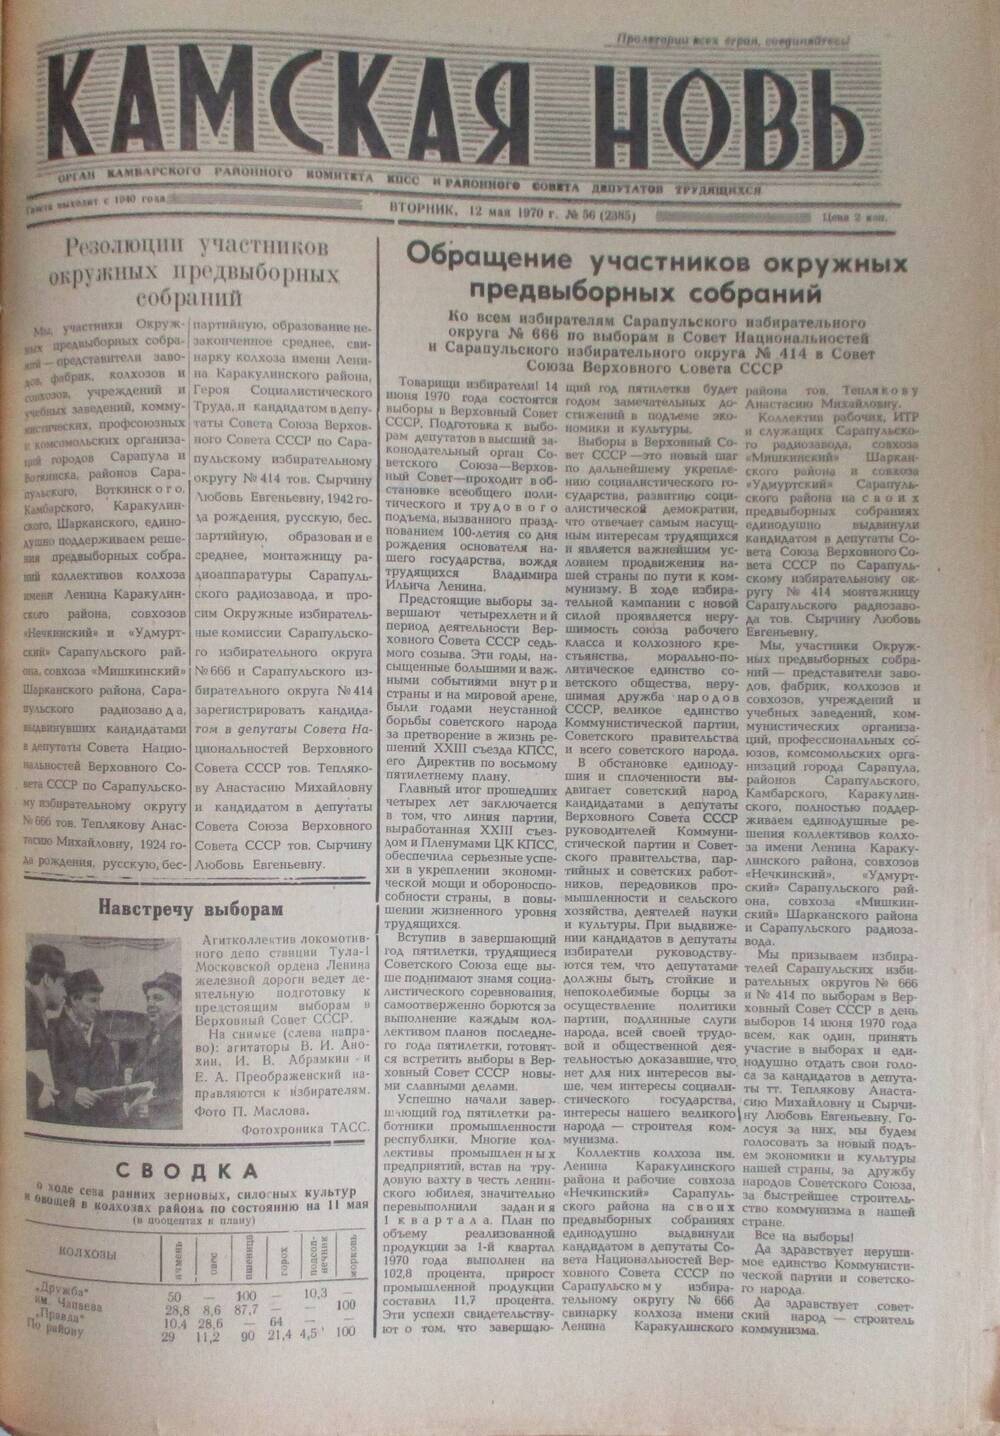 Газеты Камская новь за 1970 год. с №1 по №83., №56.